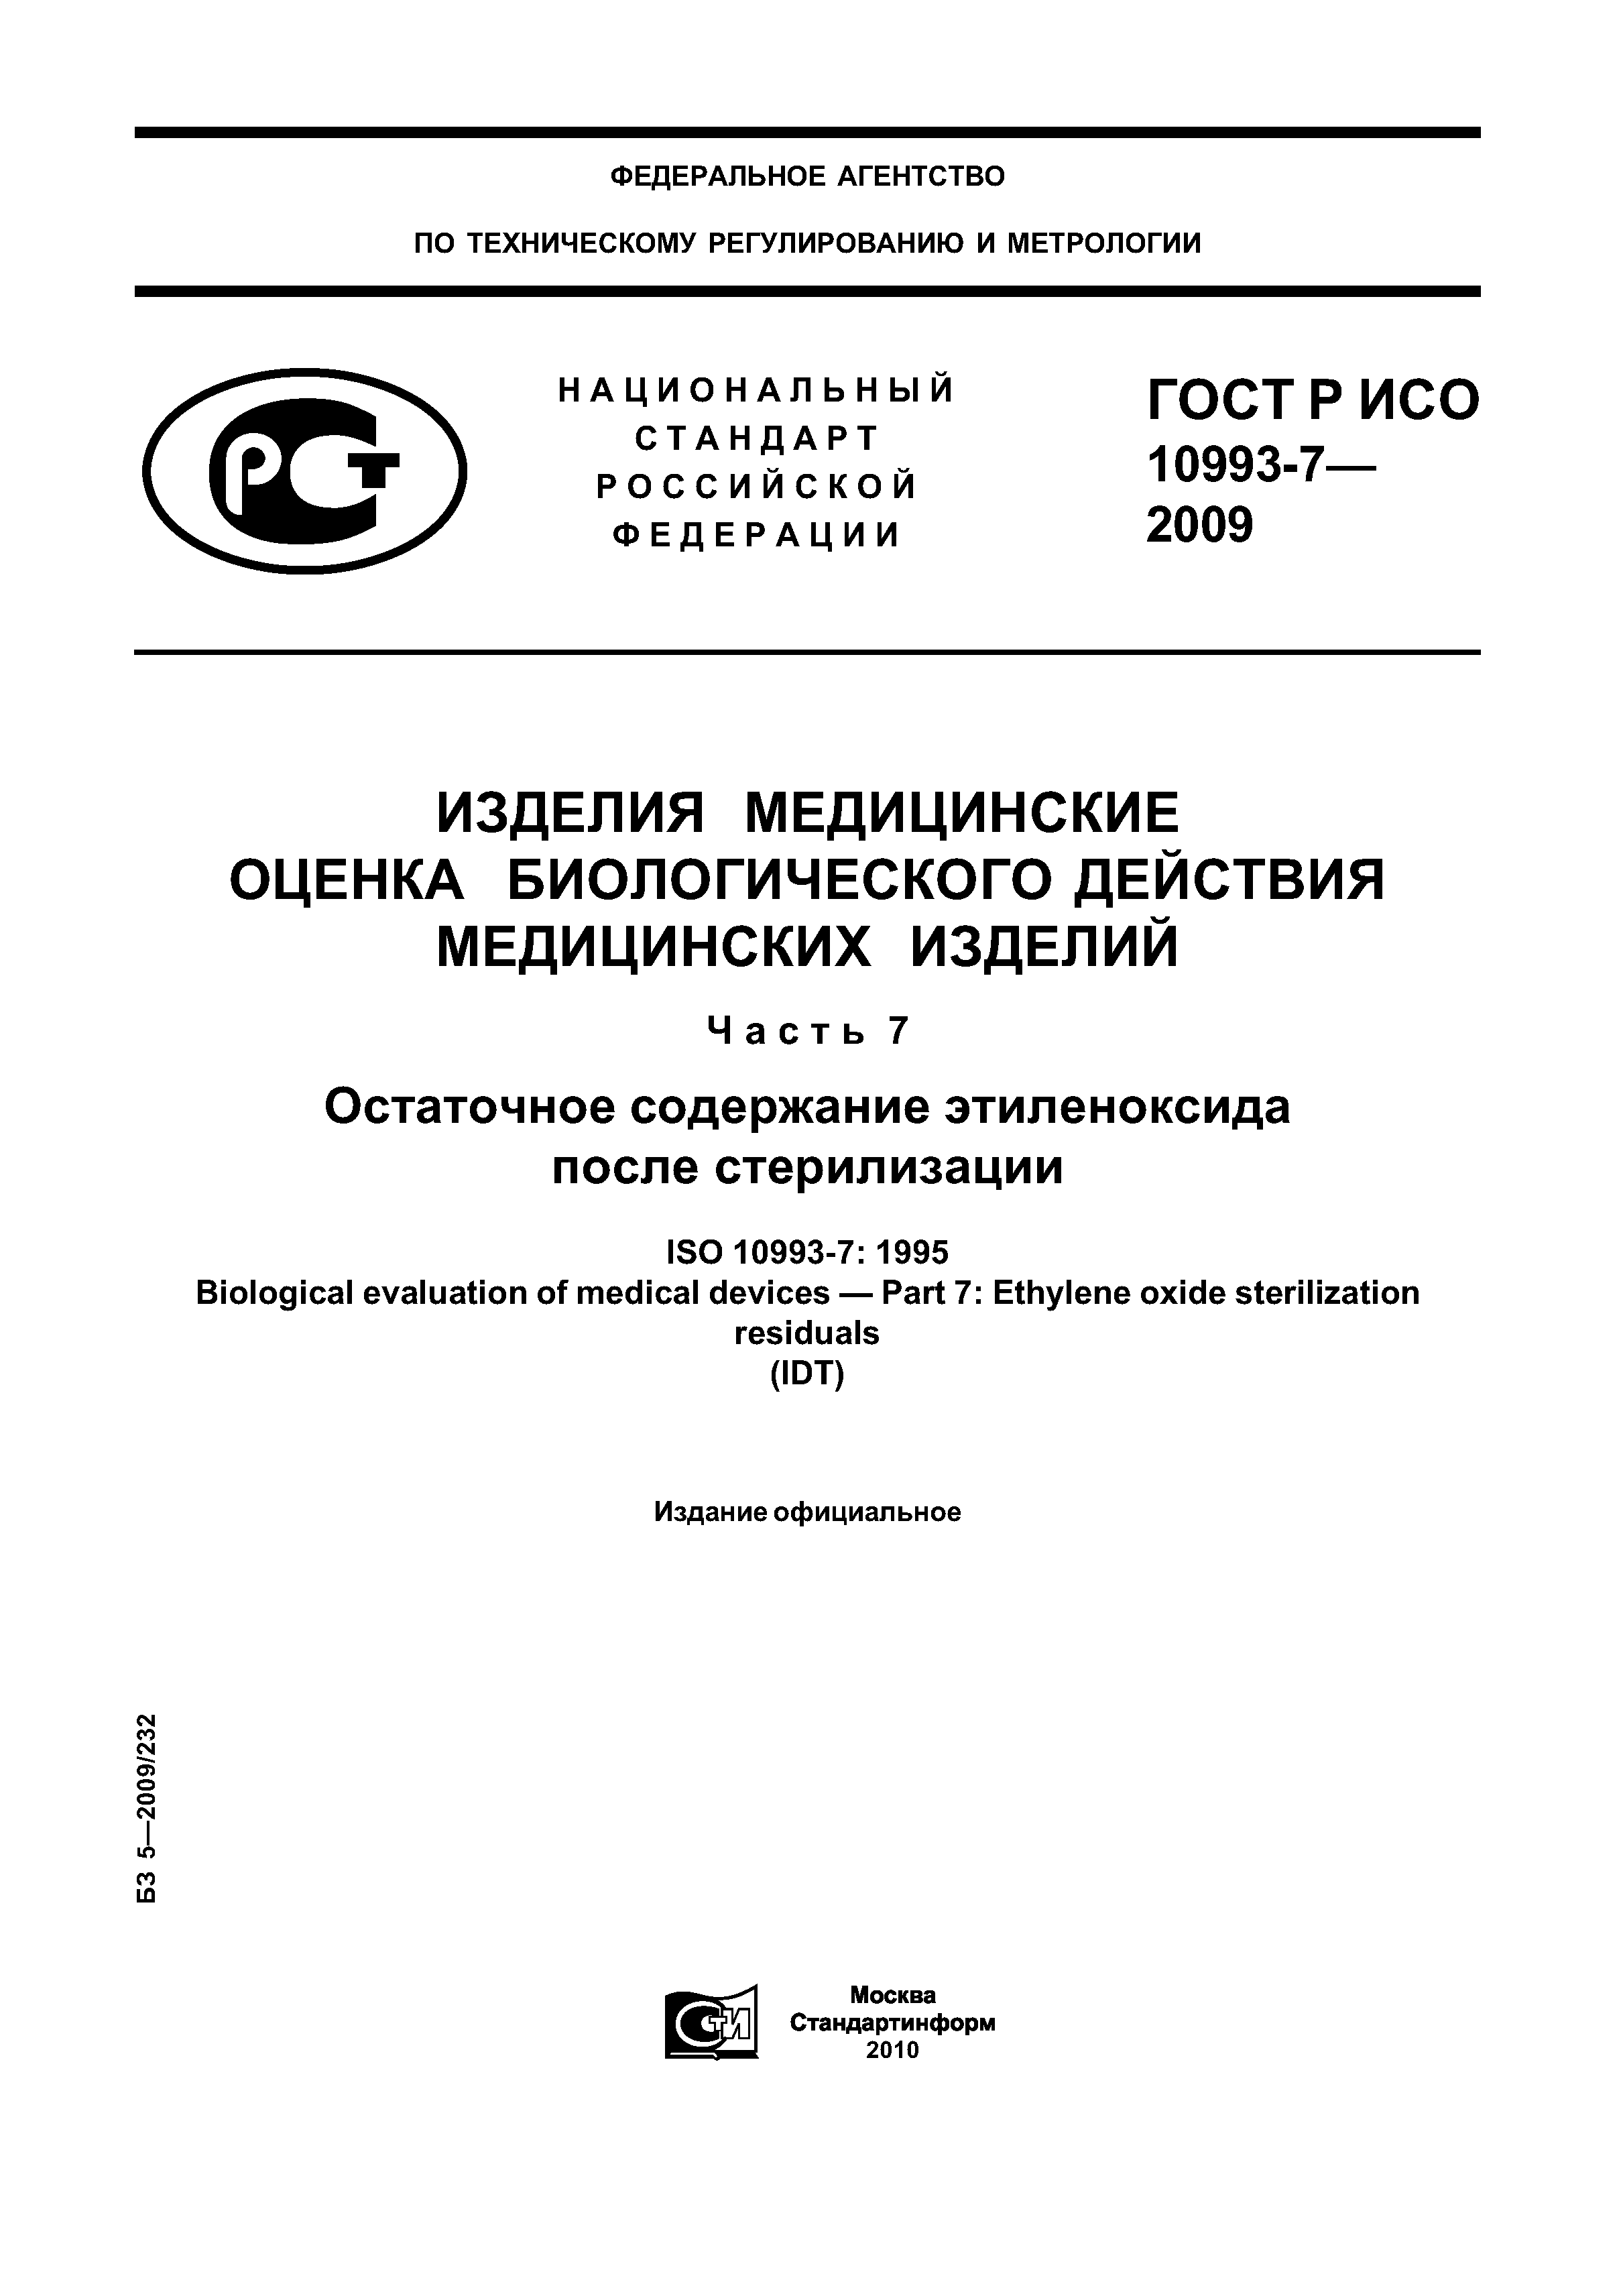 ГОСТ Р ИСО 10993-7-2009